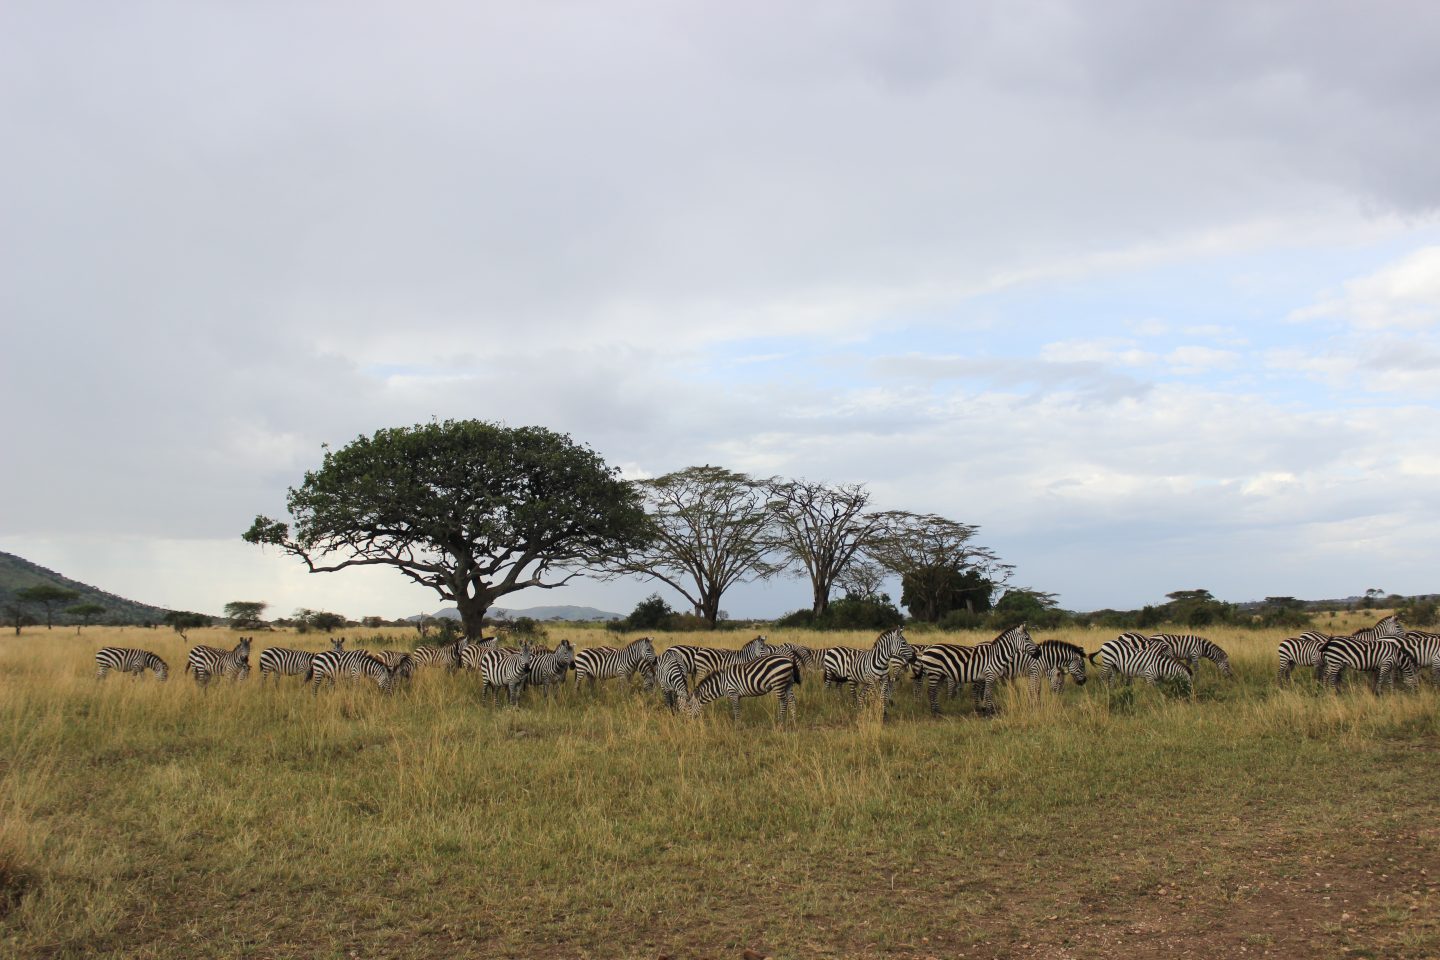 Serengeti Safari